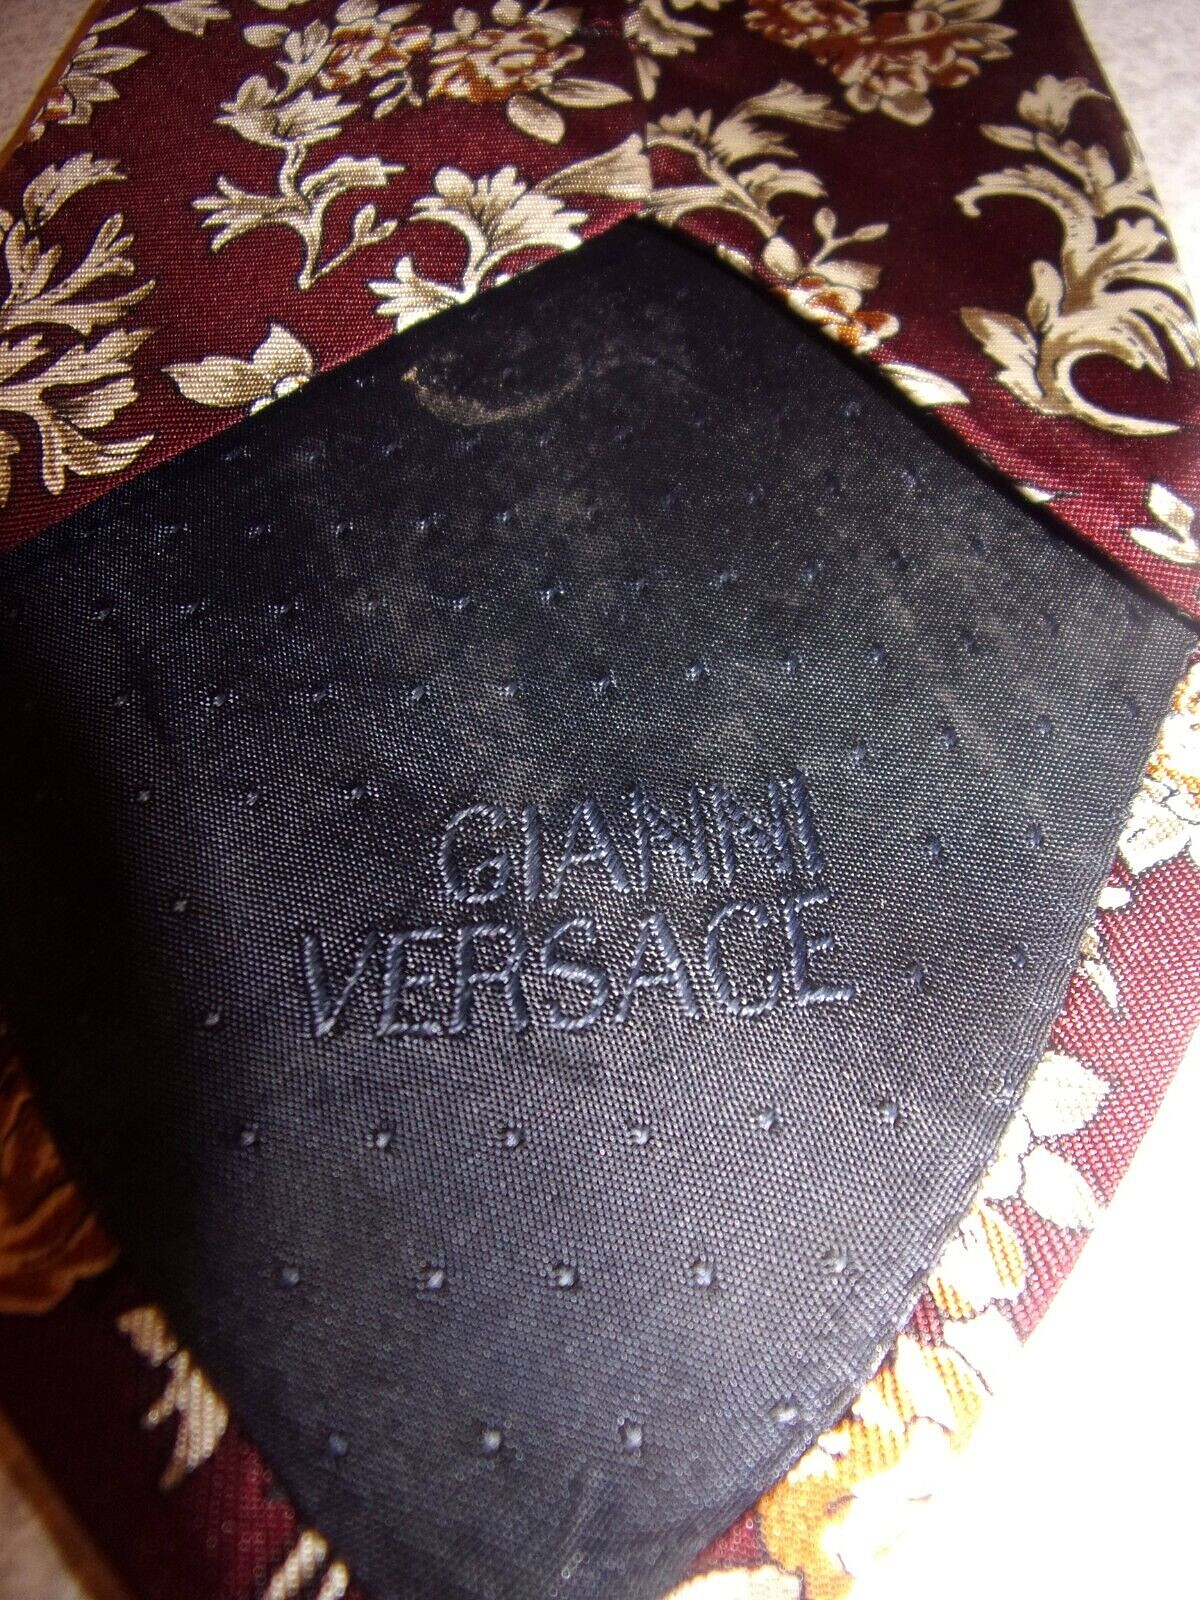 Gianni Versace Men's Necktie - 100% Silk - image 5